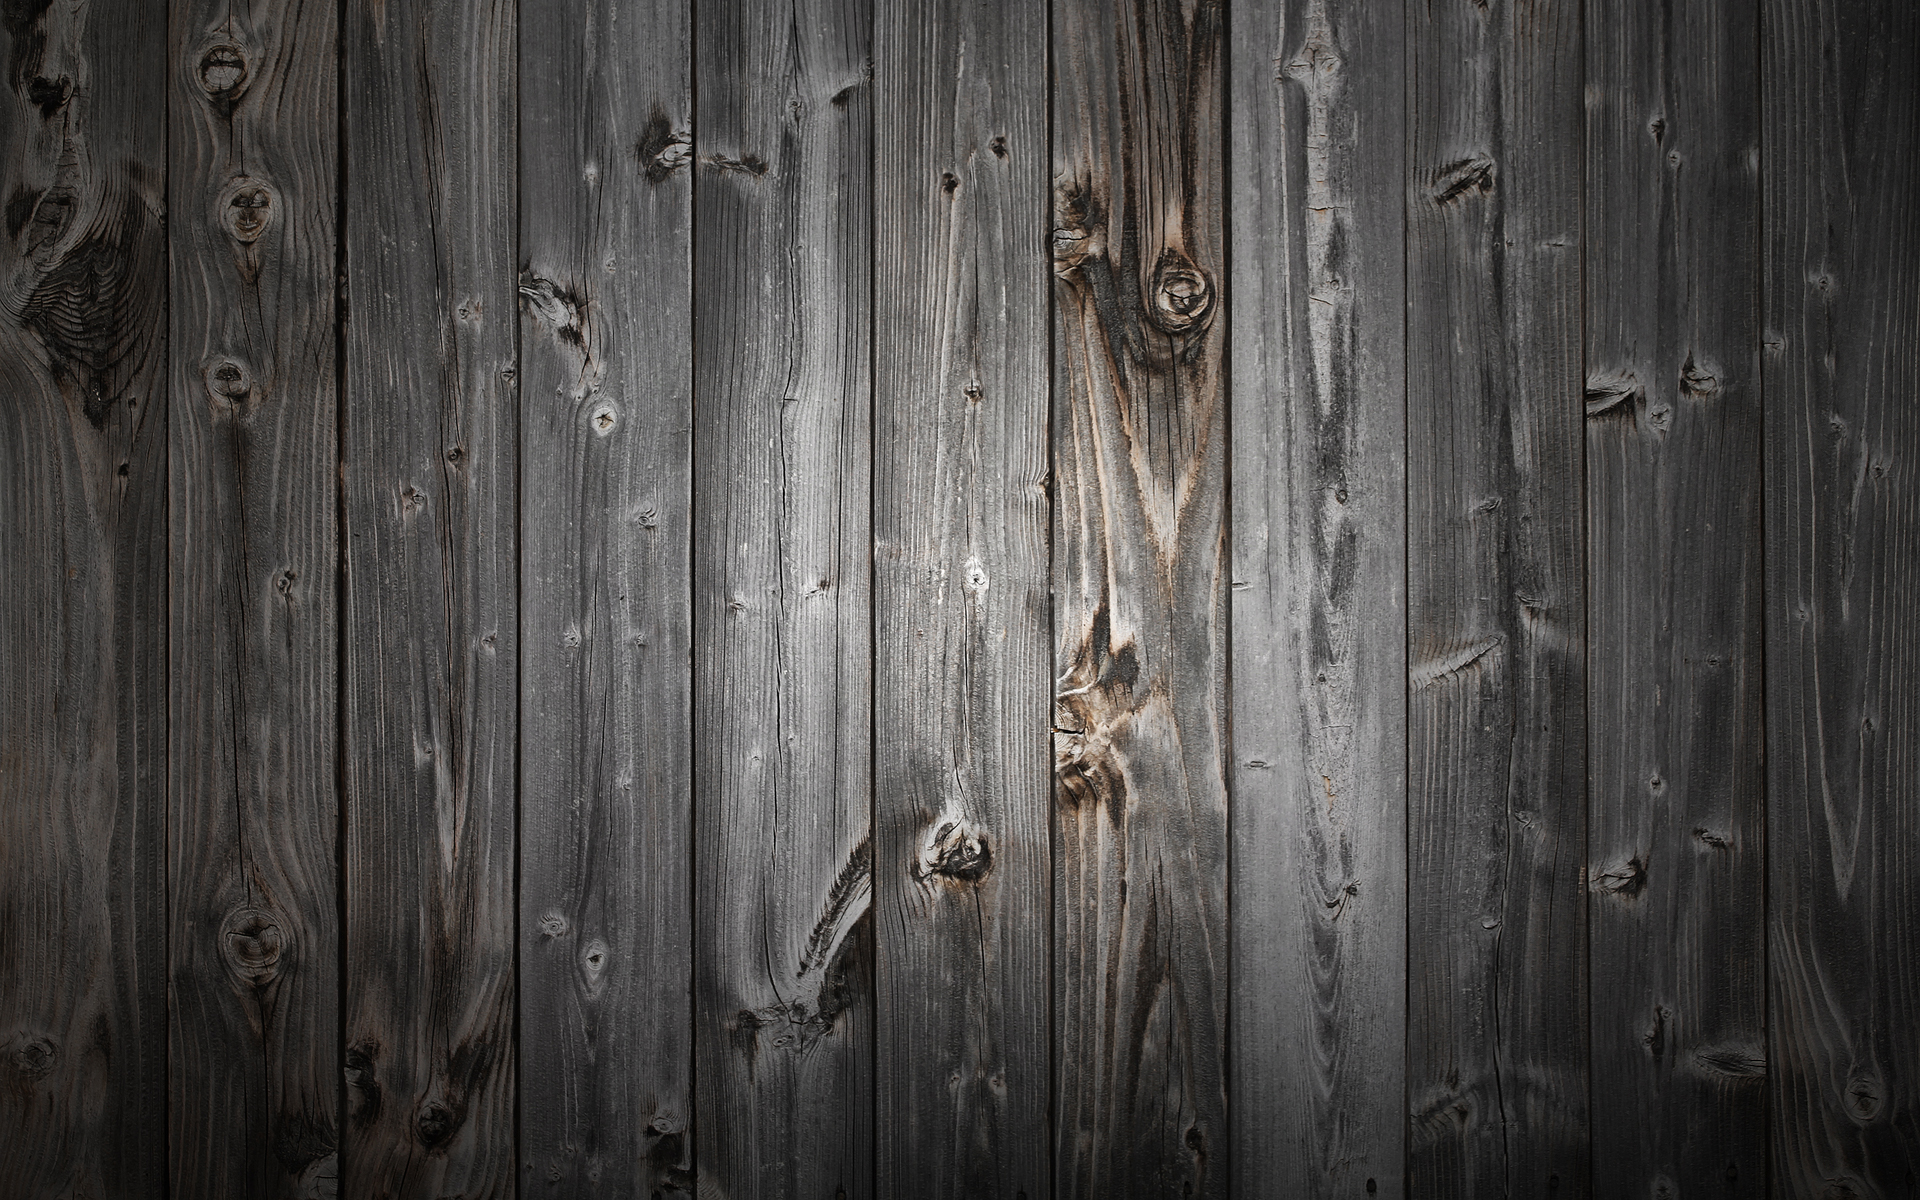 Gỗ đen full HD - Hình ảnh đầy sắc nét và chi tiết của gỗ đen full HD sẽ mang đến cho bạn trải nghiệm tuyệt vời nhất. Với chất lượng hình ảnh mượt mà và đầy đặn, bạn sẽ cảm nhận được rõ rệt sự đẹp và giá trị của loại gỗ này.